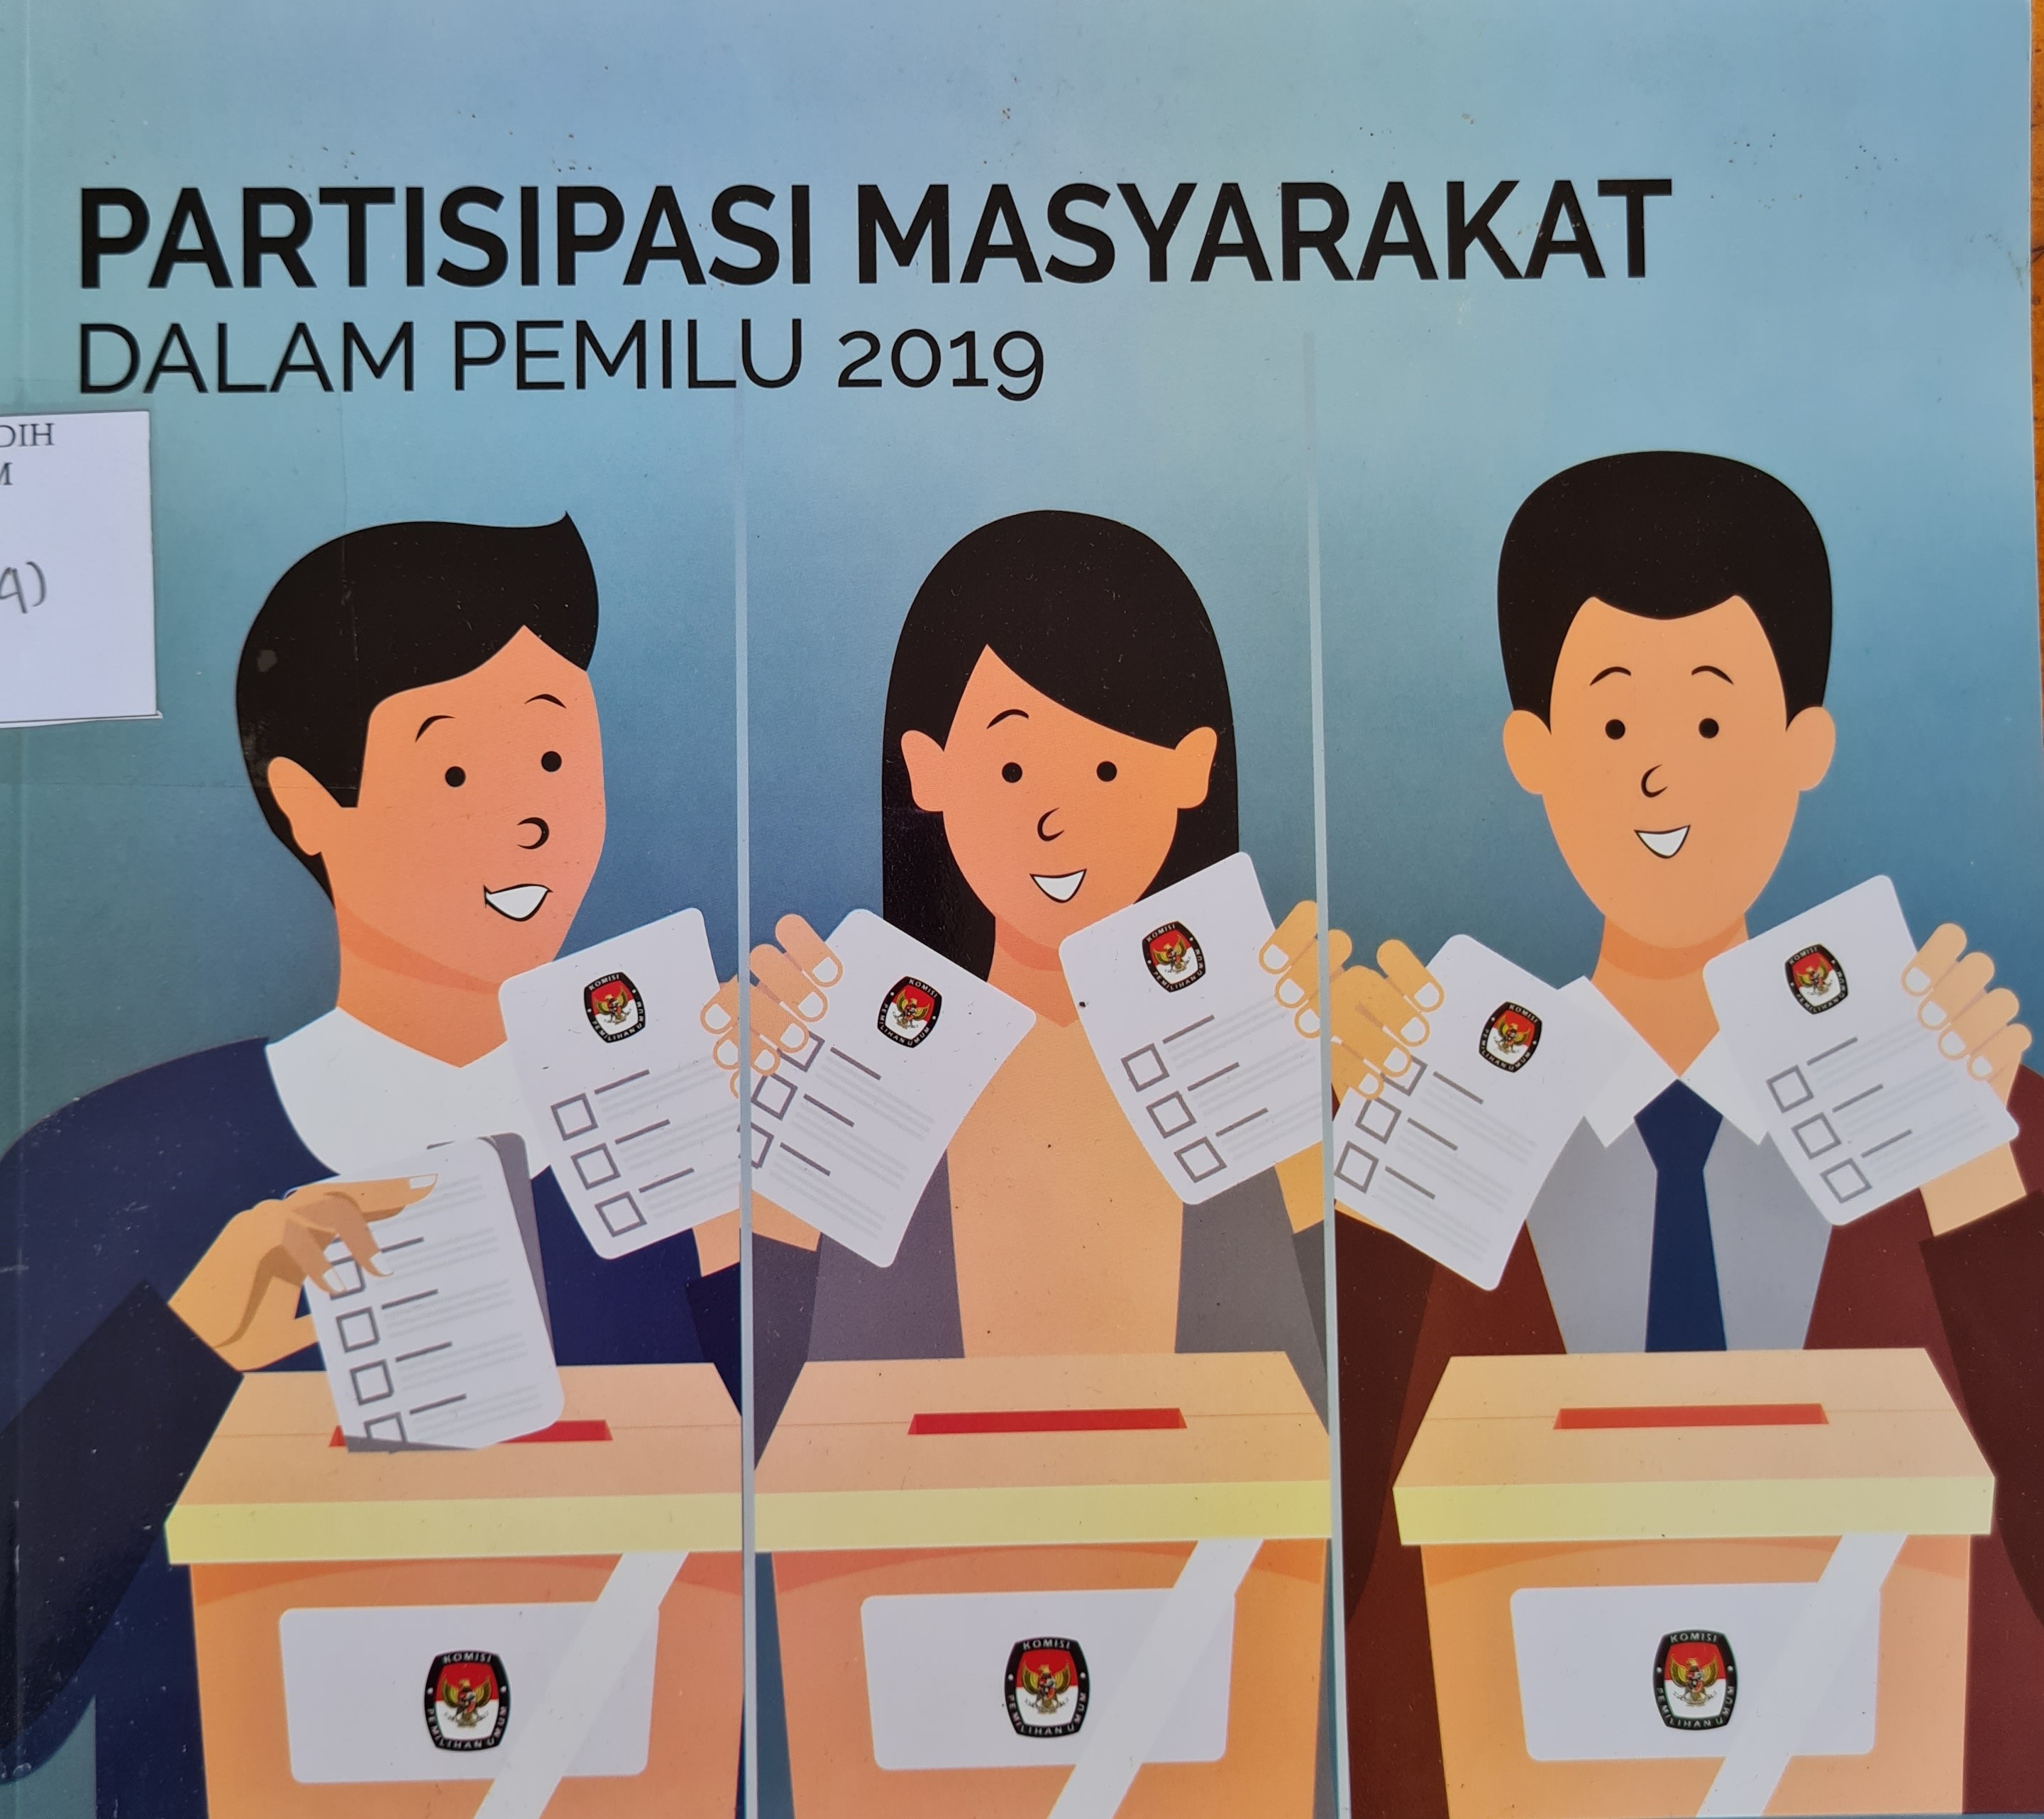 Partisipasi Masyarakat Dalam Pemilu 2019